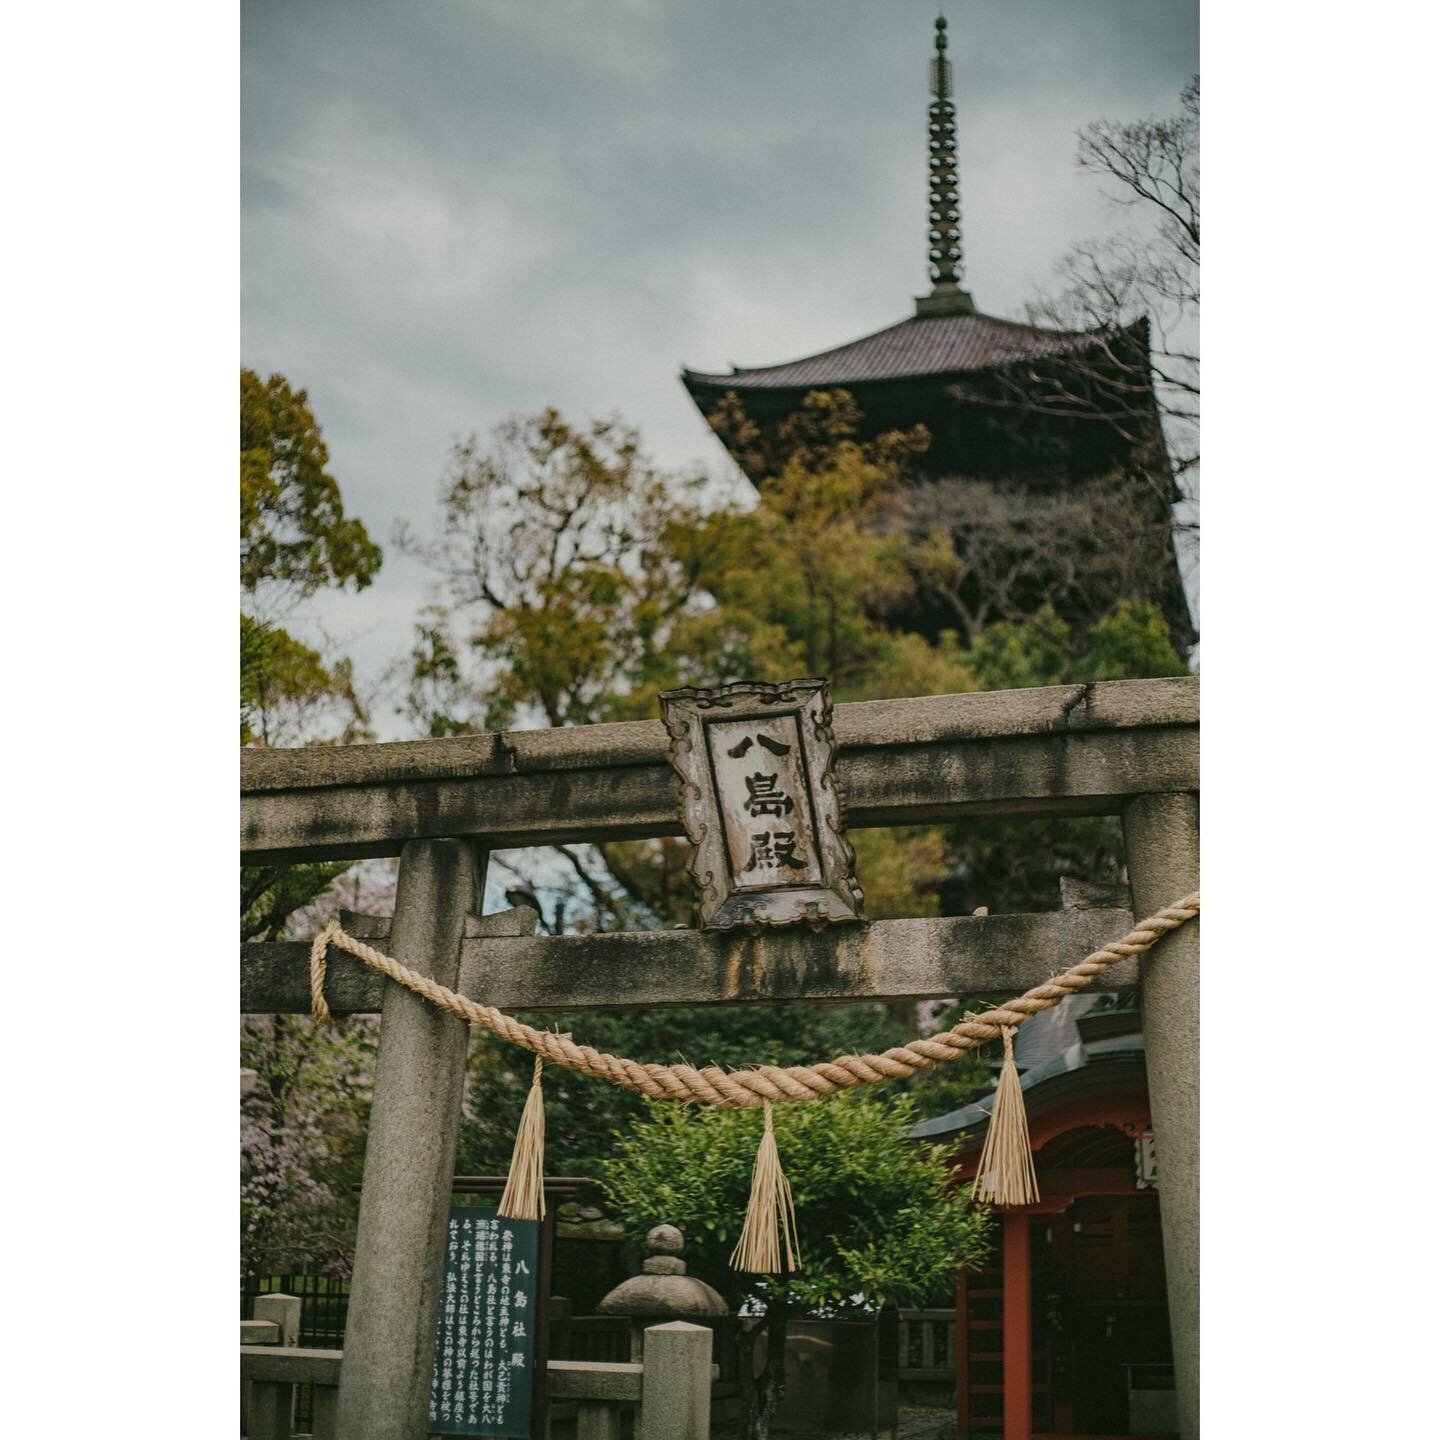 kyoto temple
.
.
.
#capturestreets&nbsp;#minimalzine&nbsp;#photocinematica&nbsp;#somewheremagazine&nbsp;#eyeshotmag&nbsp;#travelphotography&nbsp;#timelessstreets&nbsp;#thinkverylittle
#travelphotography&nbsp;#urbanstreetphotography&nbsp;#insidephotos